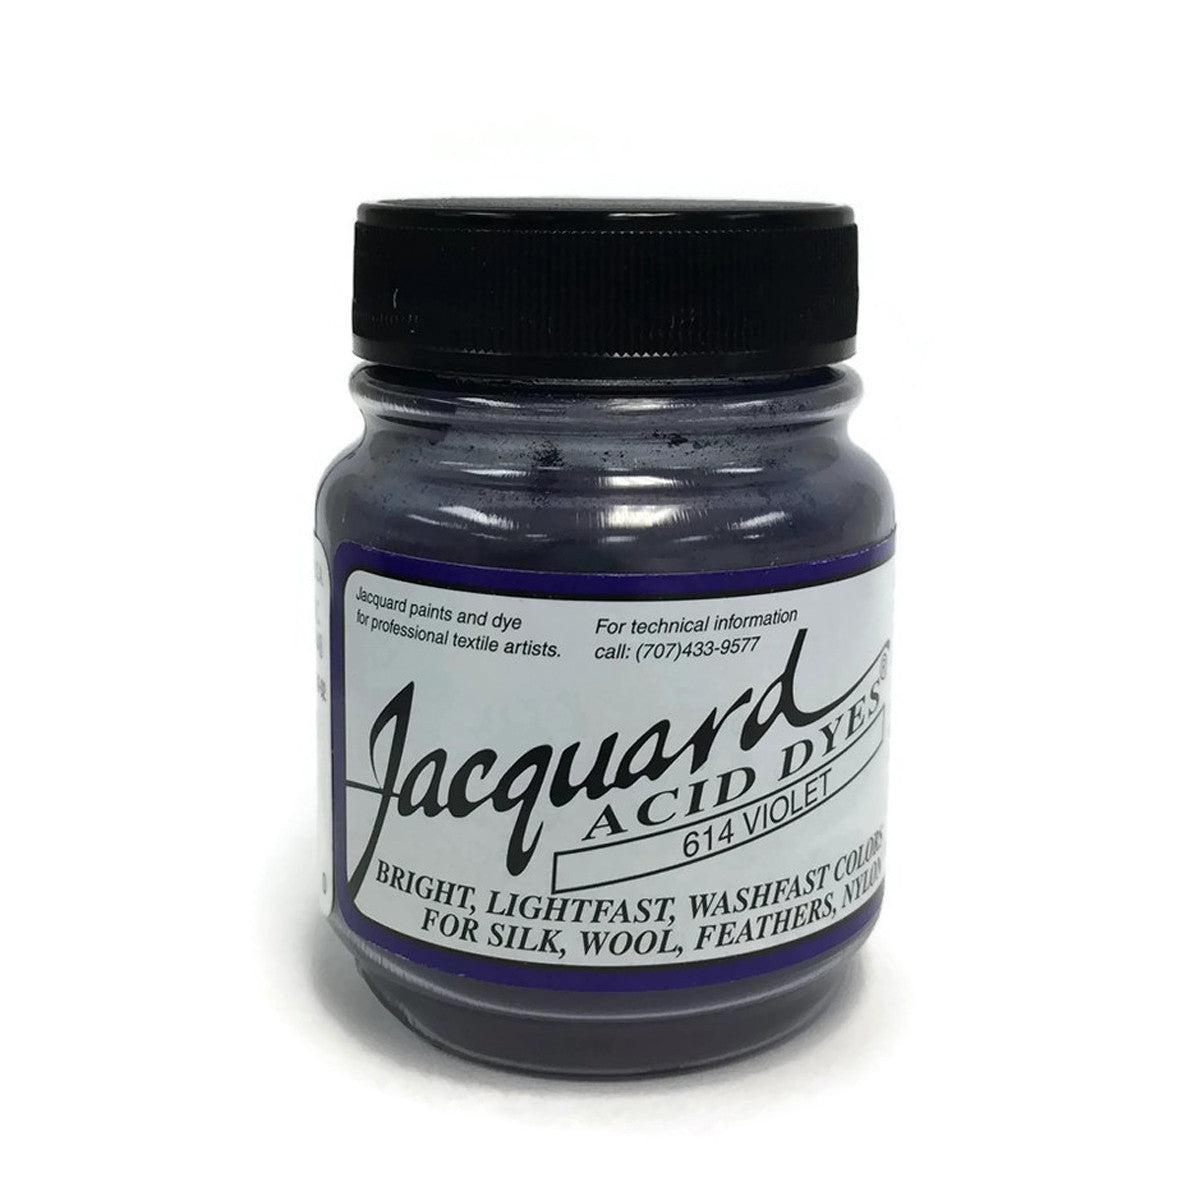 Jacquard Acid Dye 1/2 Oz